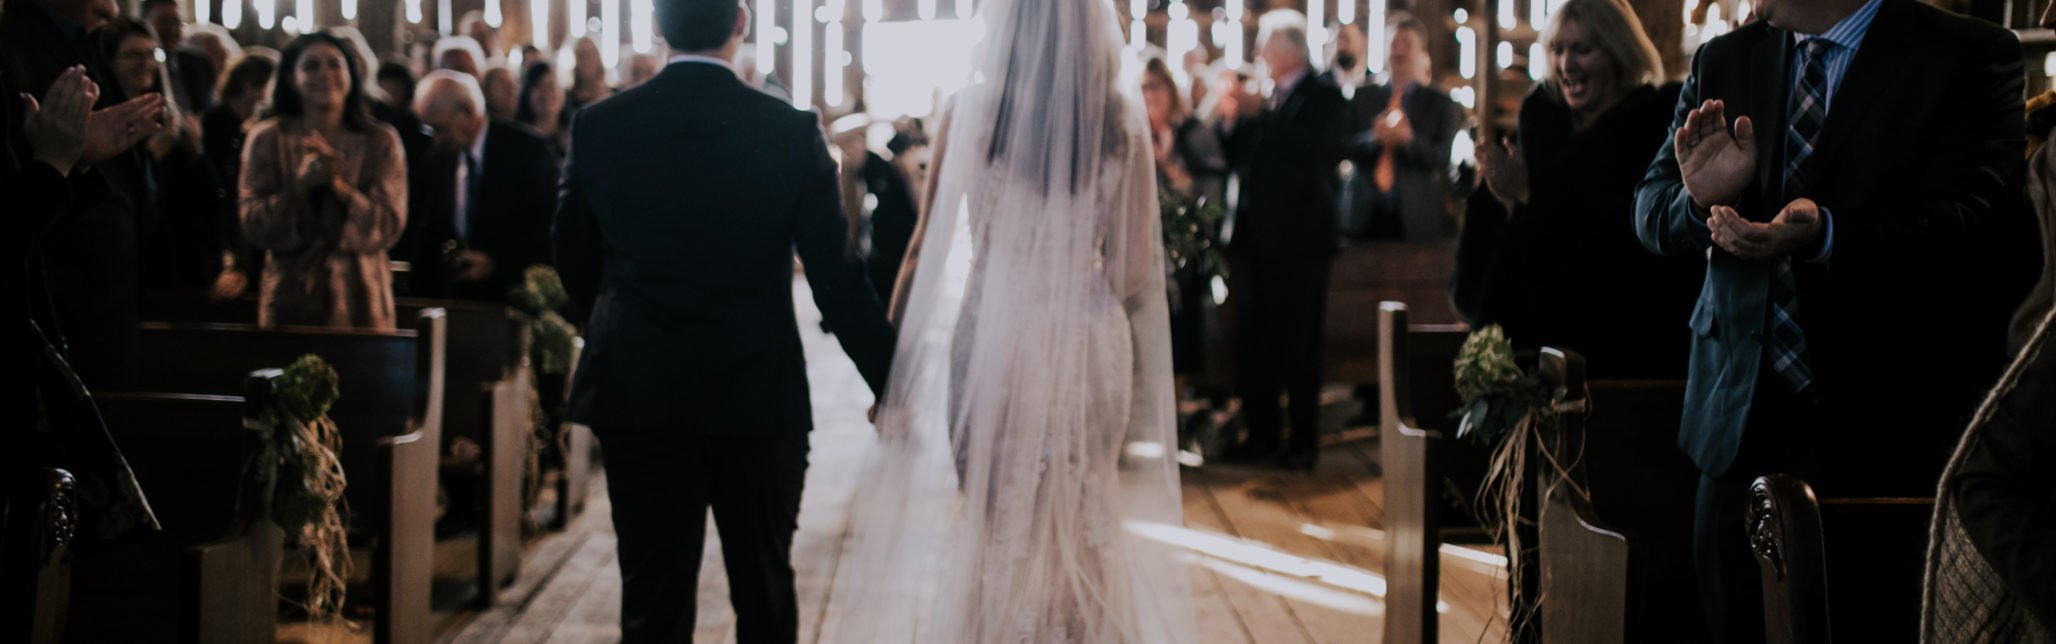 bride and groom walking down aisle in barn